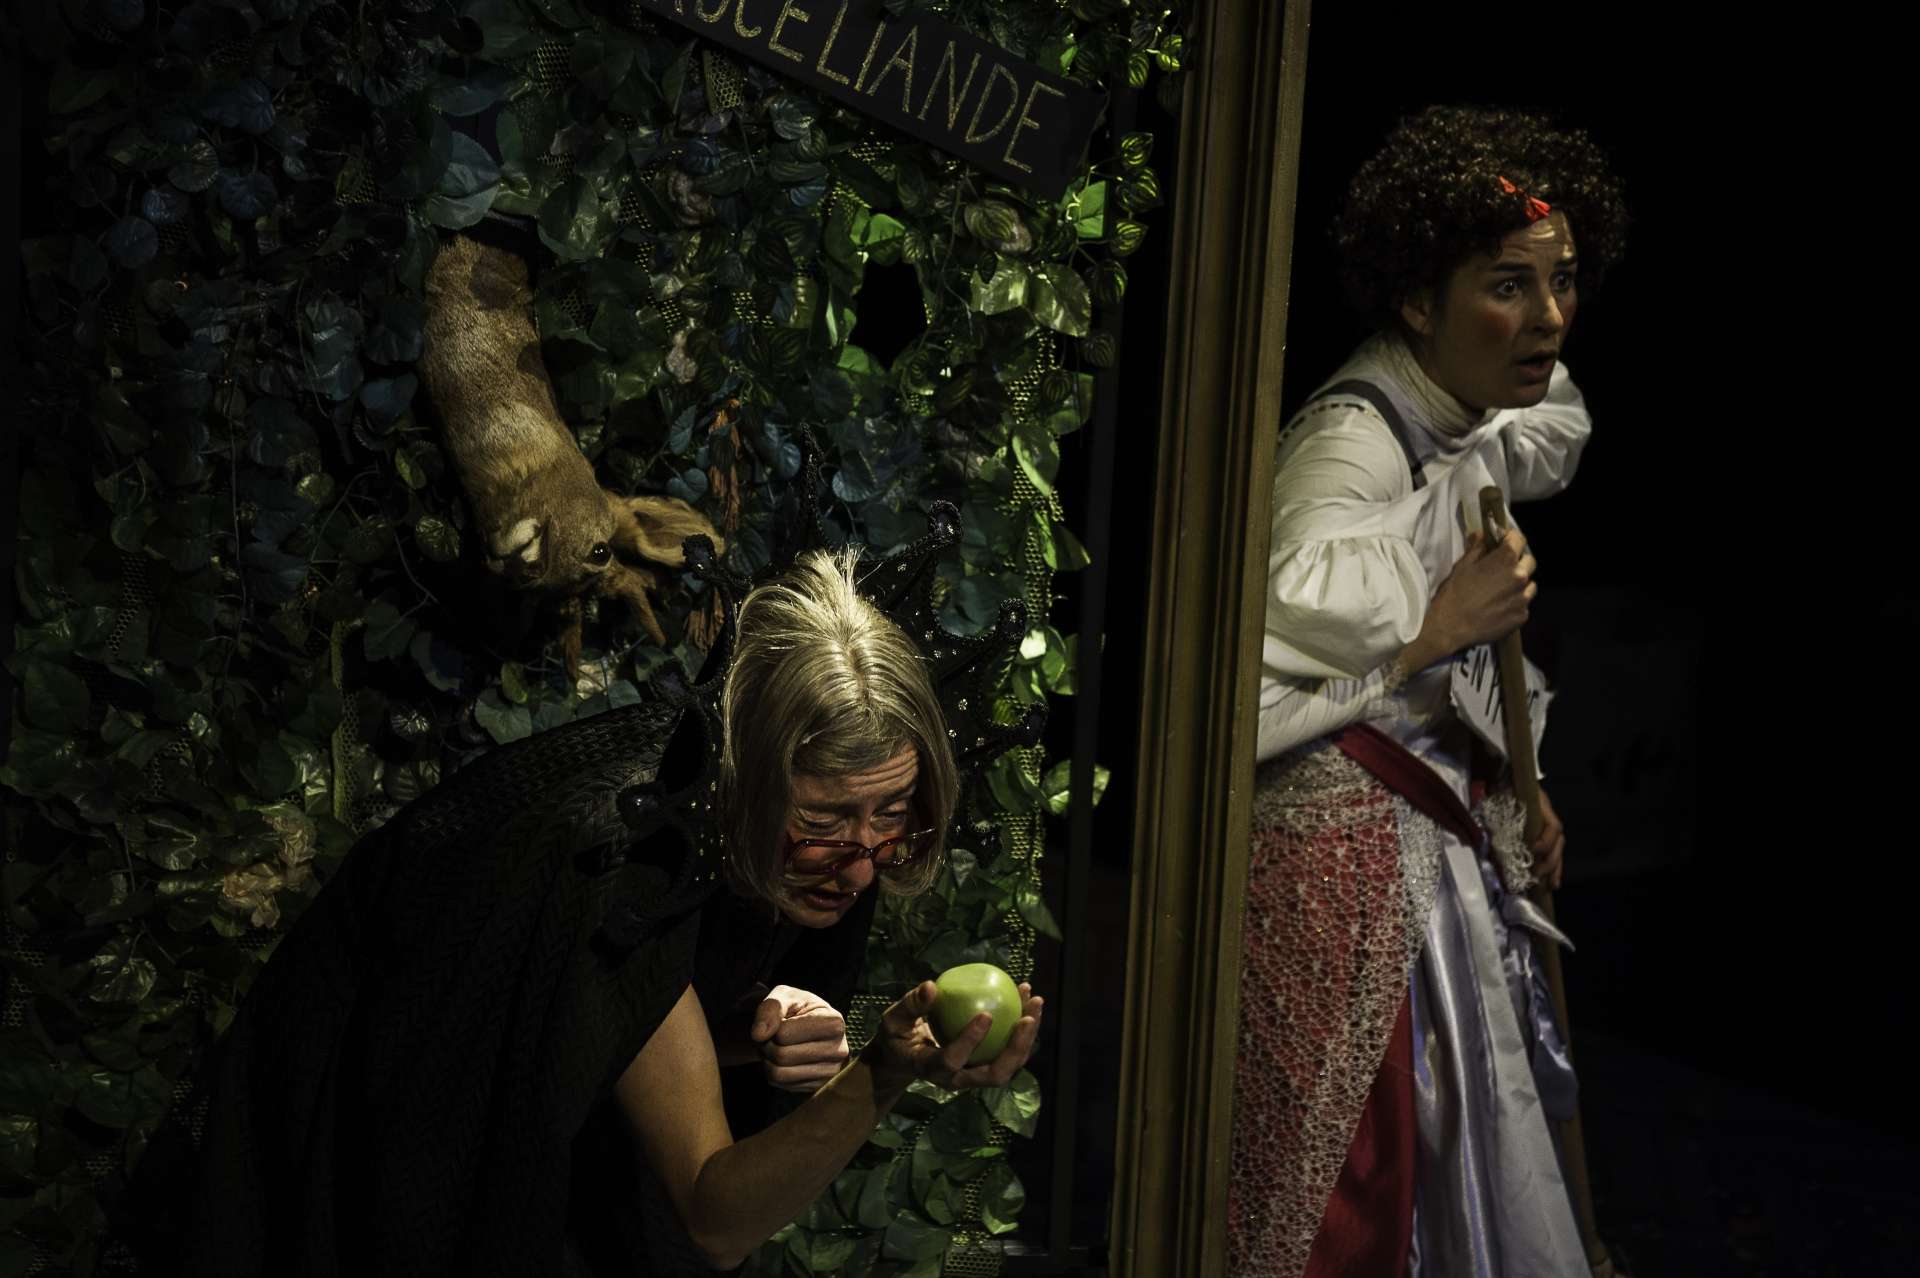 Une femme déguisée en vielle femme tient une pomme verte. Une autre femme à côté conte l'histoire.